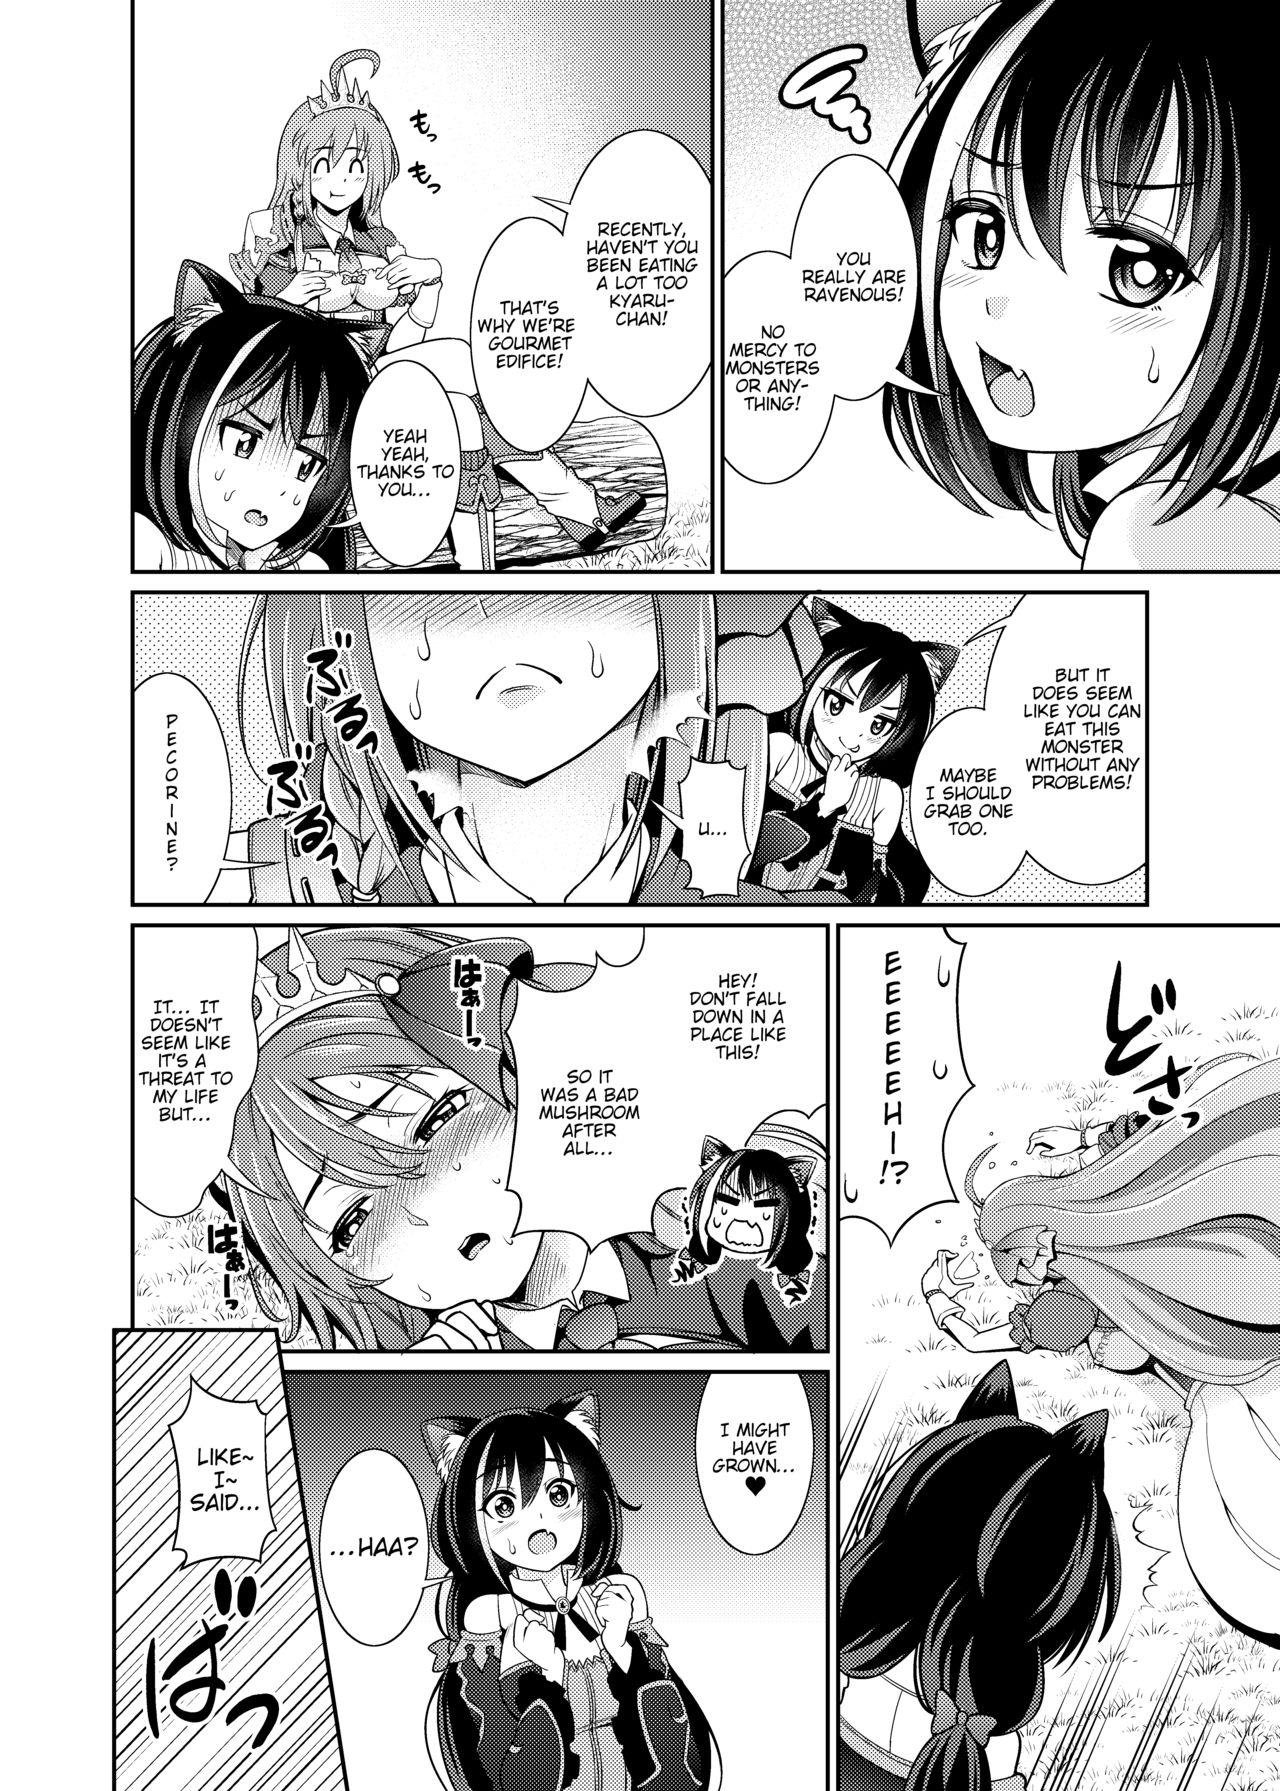 Family Sex Mamono nante Taberu kara... Ochinchin ga Haechau no yo!! - Princess connect Sucking - Page 5